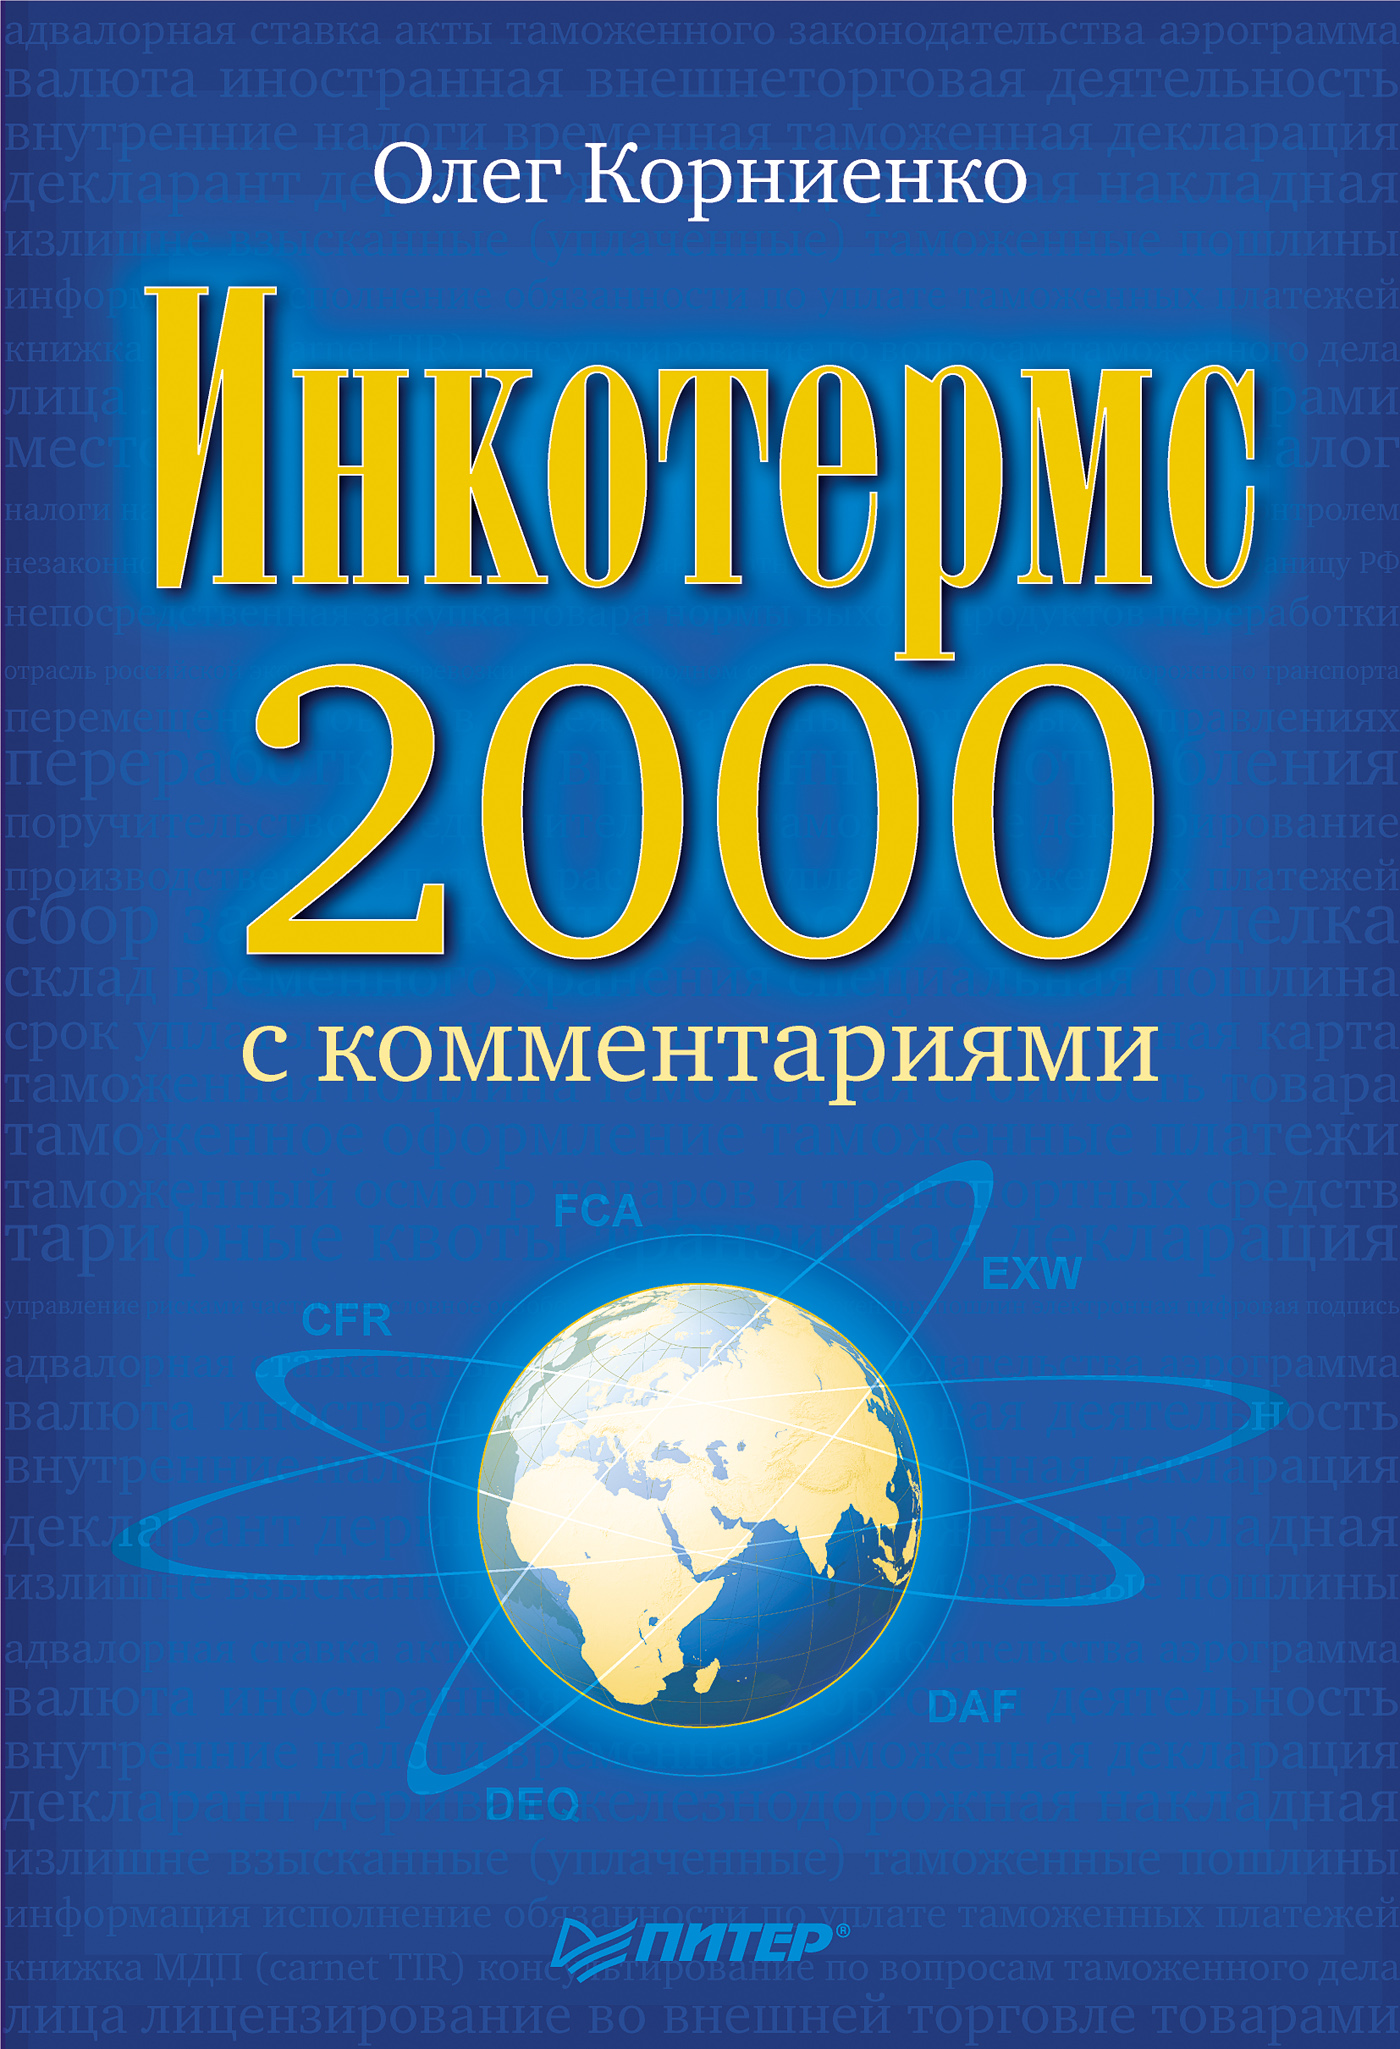 Книга Инкотермс-2000 с комментариями из серии , созданная Олег Корниенко, написана в жанре Экономика, ВЭД, Юриспруденция, право. Стоимость электронной книги Инкотермс-2000 с комментариями с идентификатором 430092 составляет 49.00 руб.